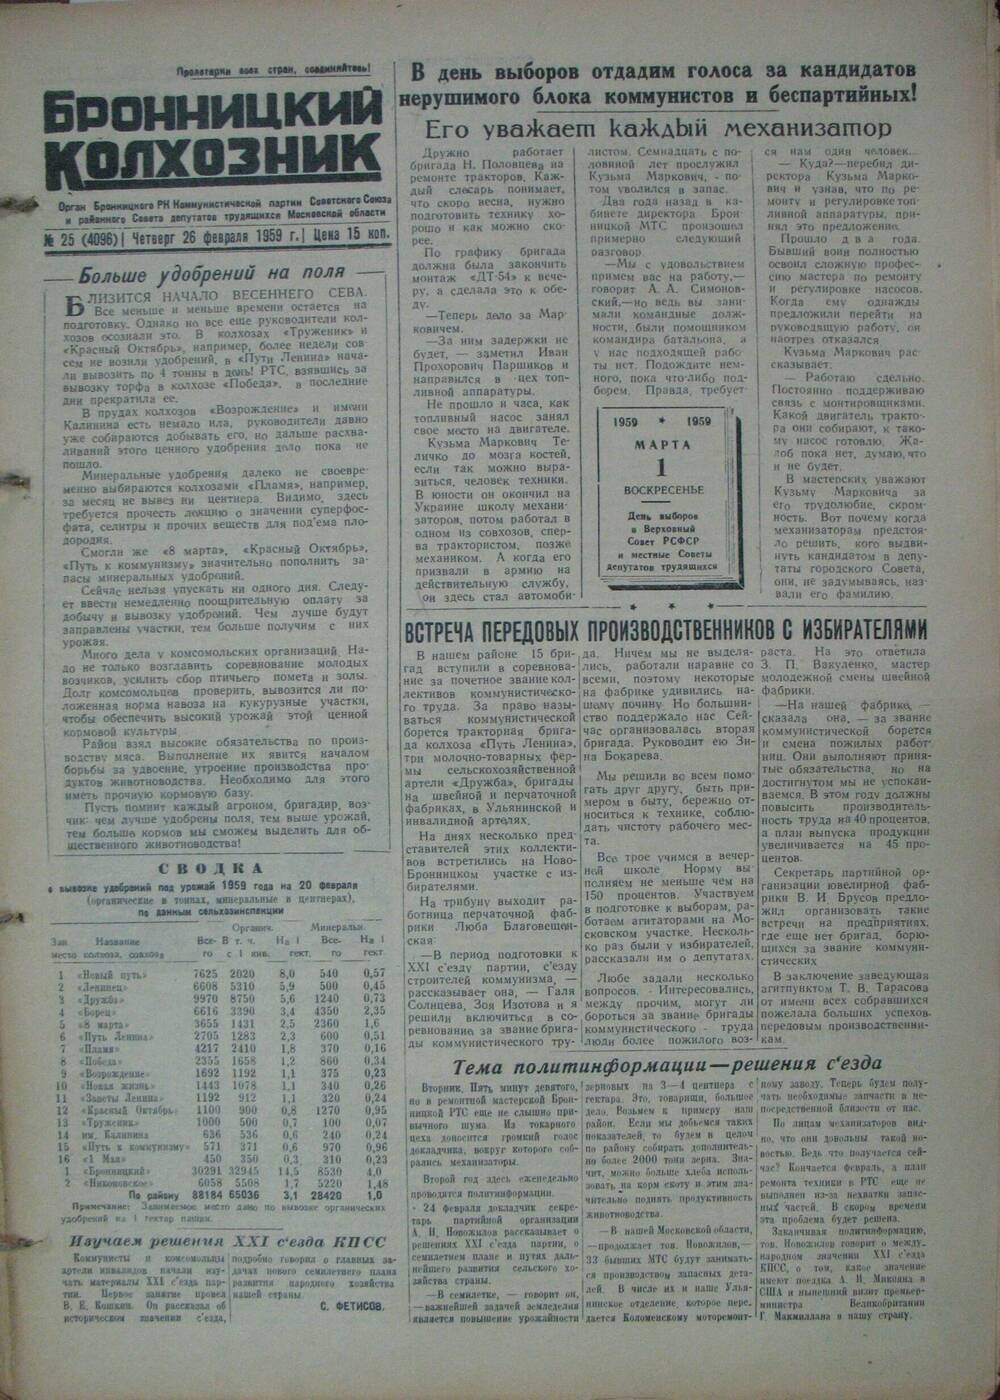 Бронницкий колхозник,  газета № 25 от 26 февраля 1959г